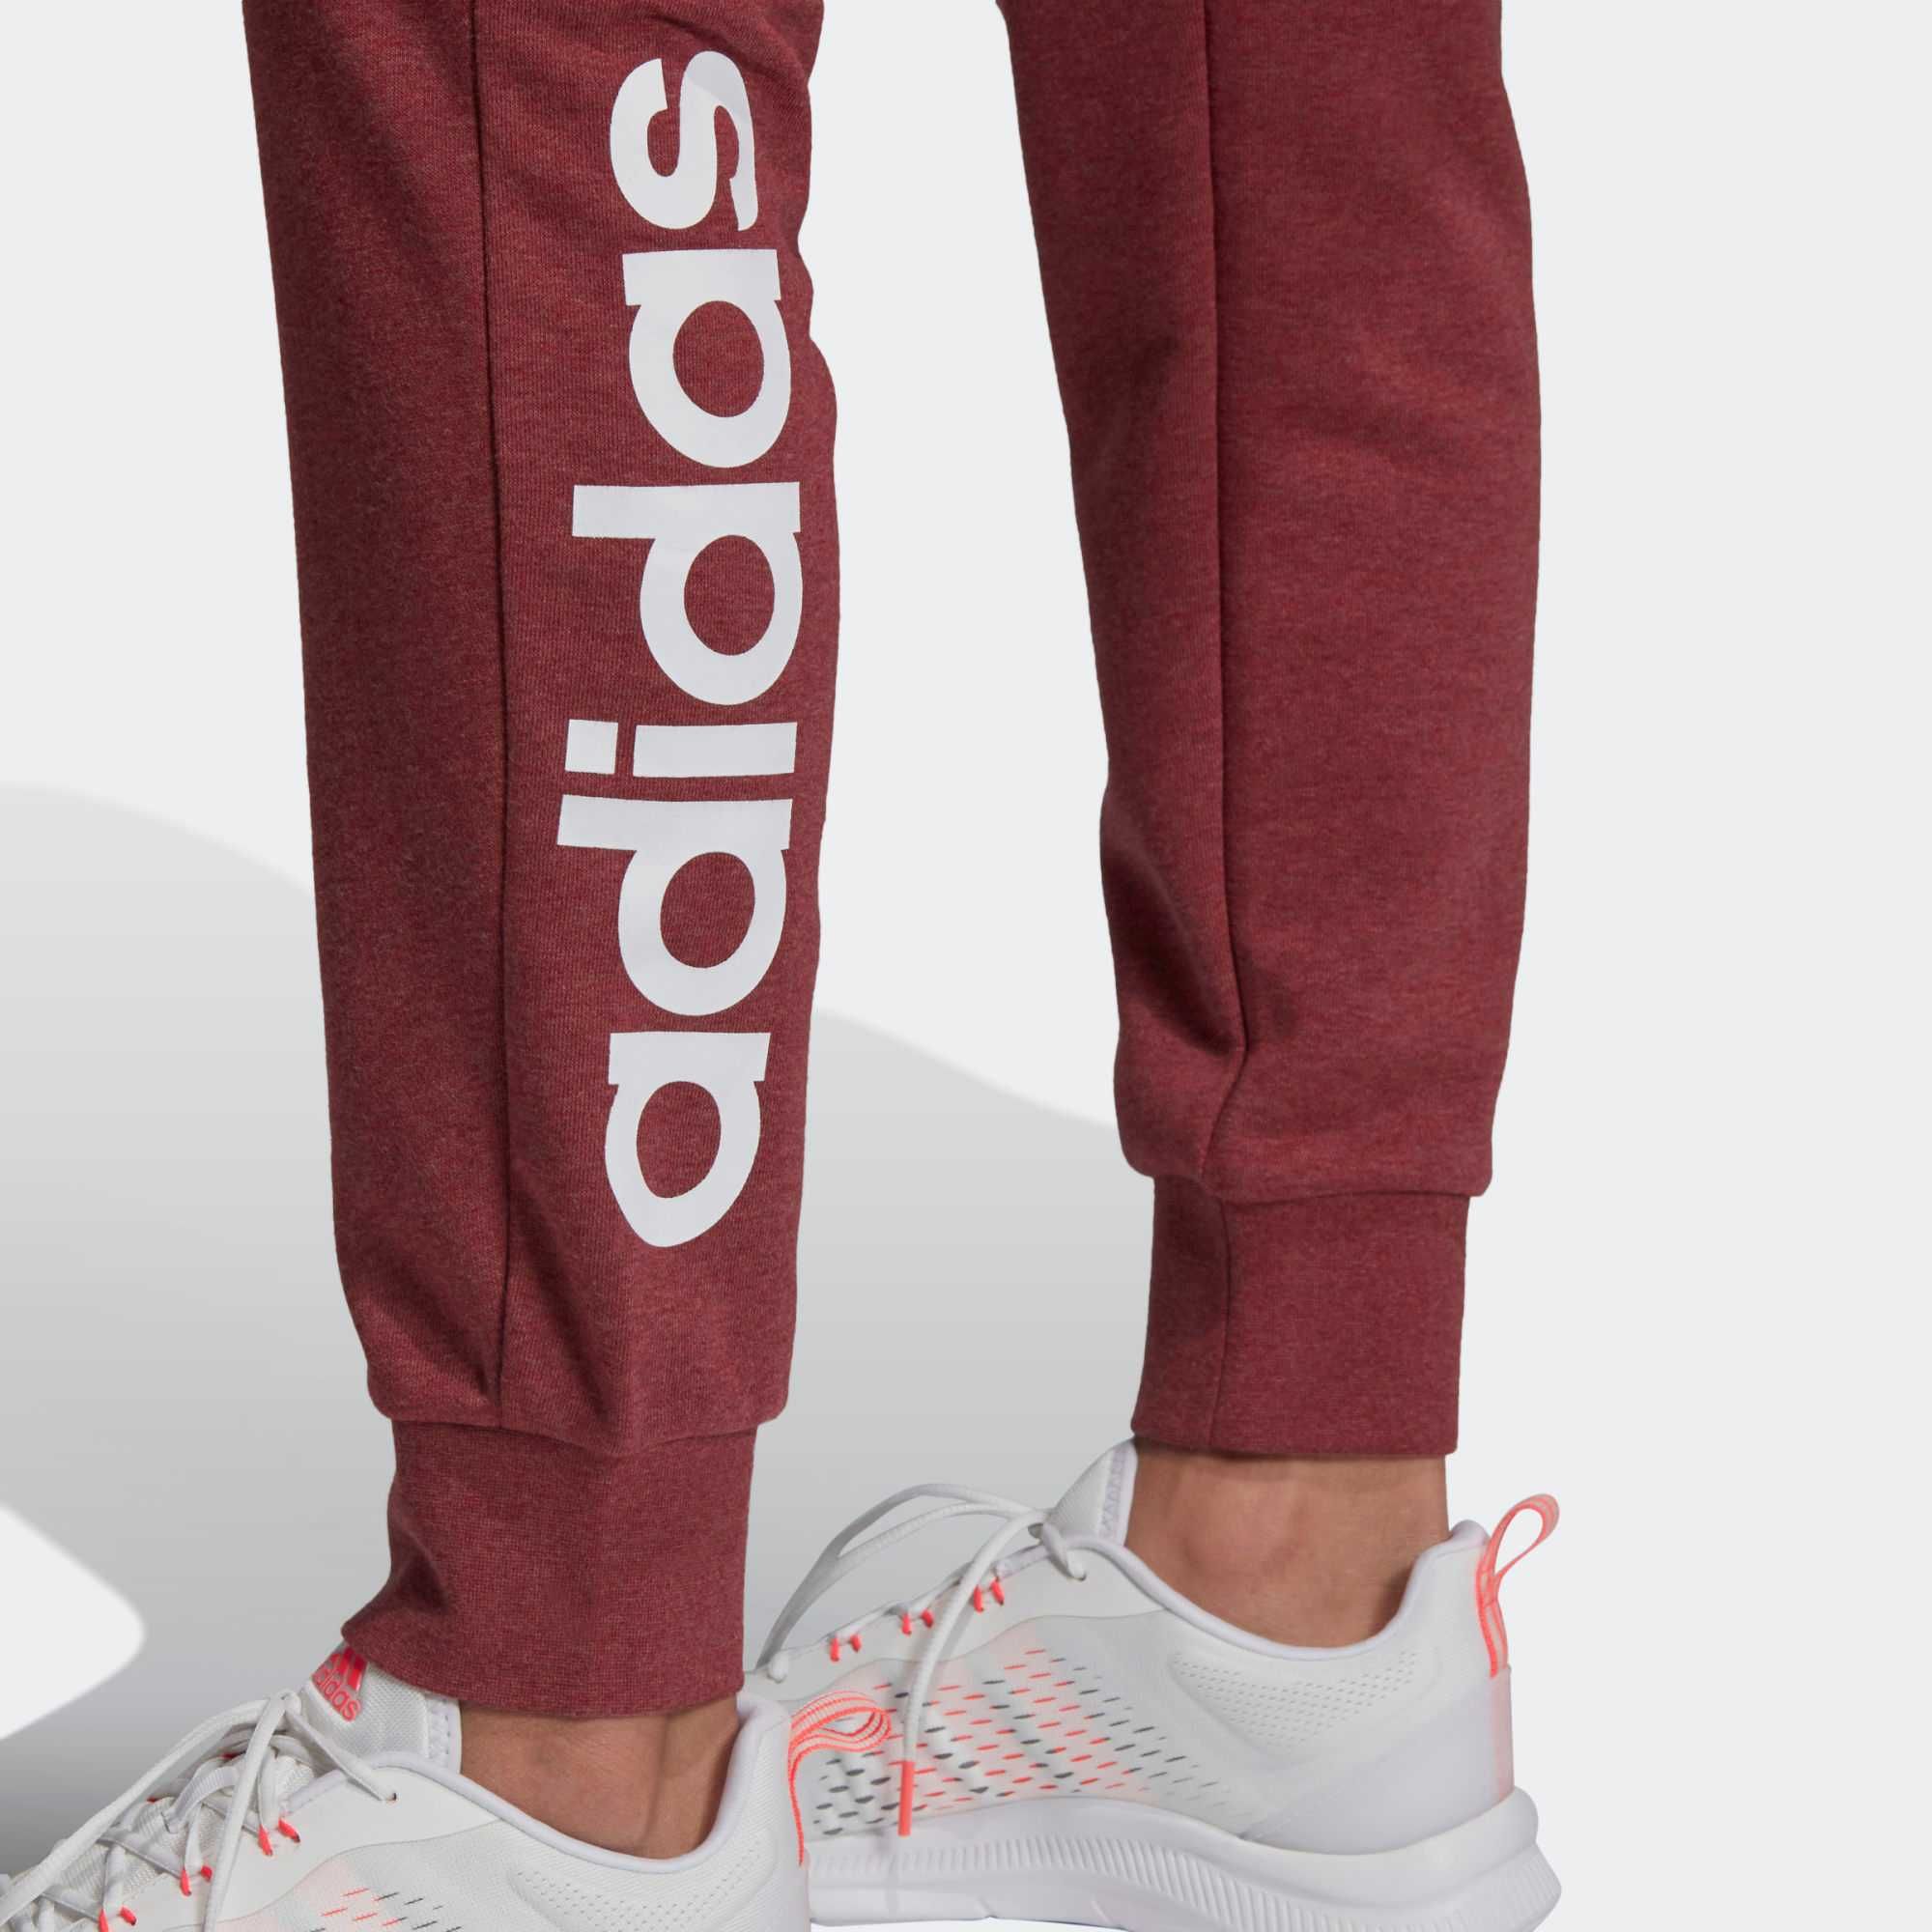 Спортивные штаны Адидас, Adidas оригинал, капри Сrivit S-М р-р